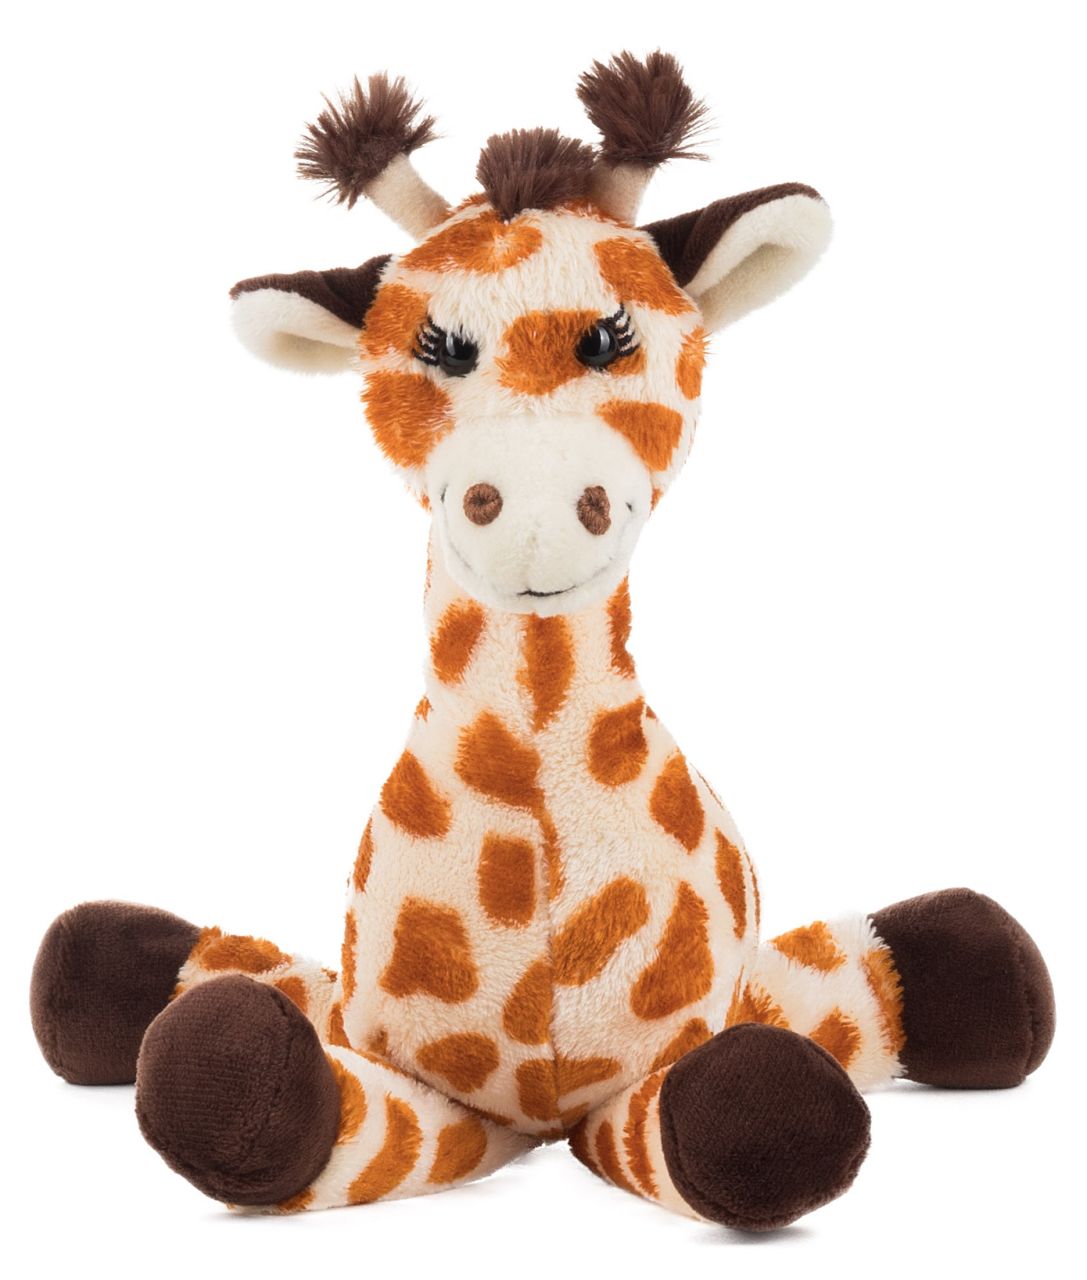 Schaffer -Plush toy giraffe "Bahati" 28cm